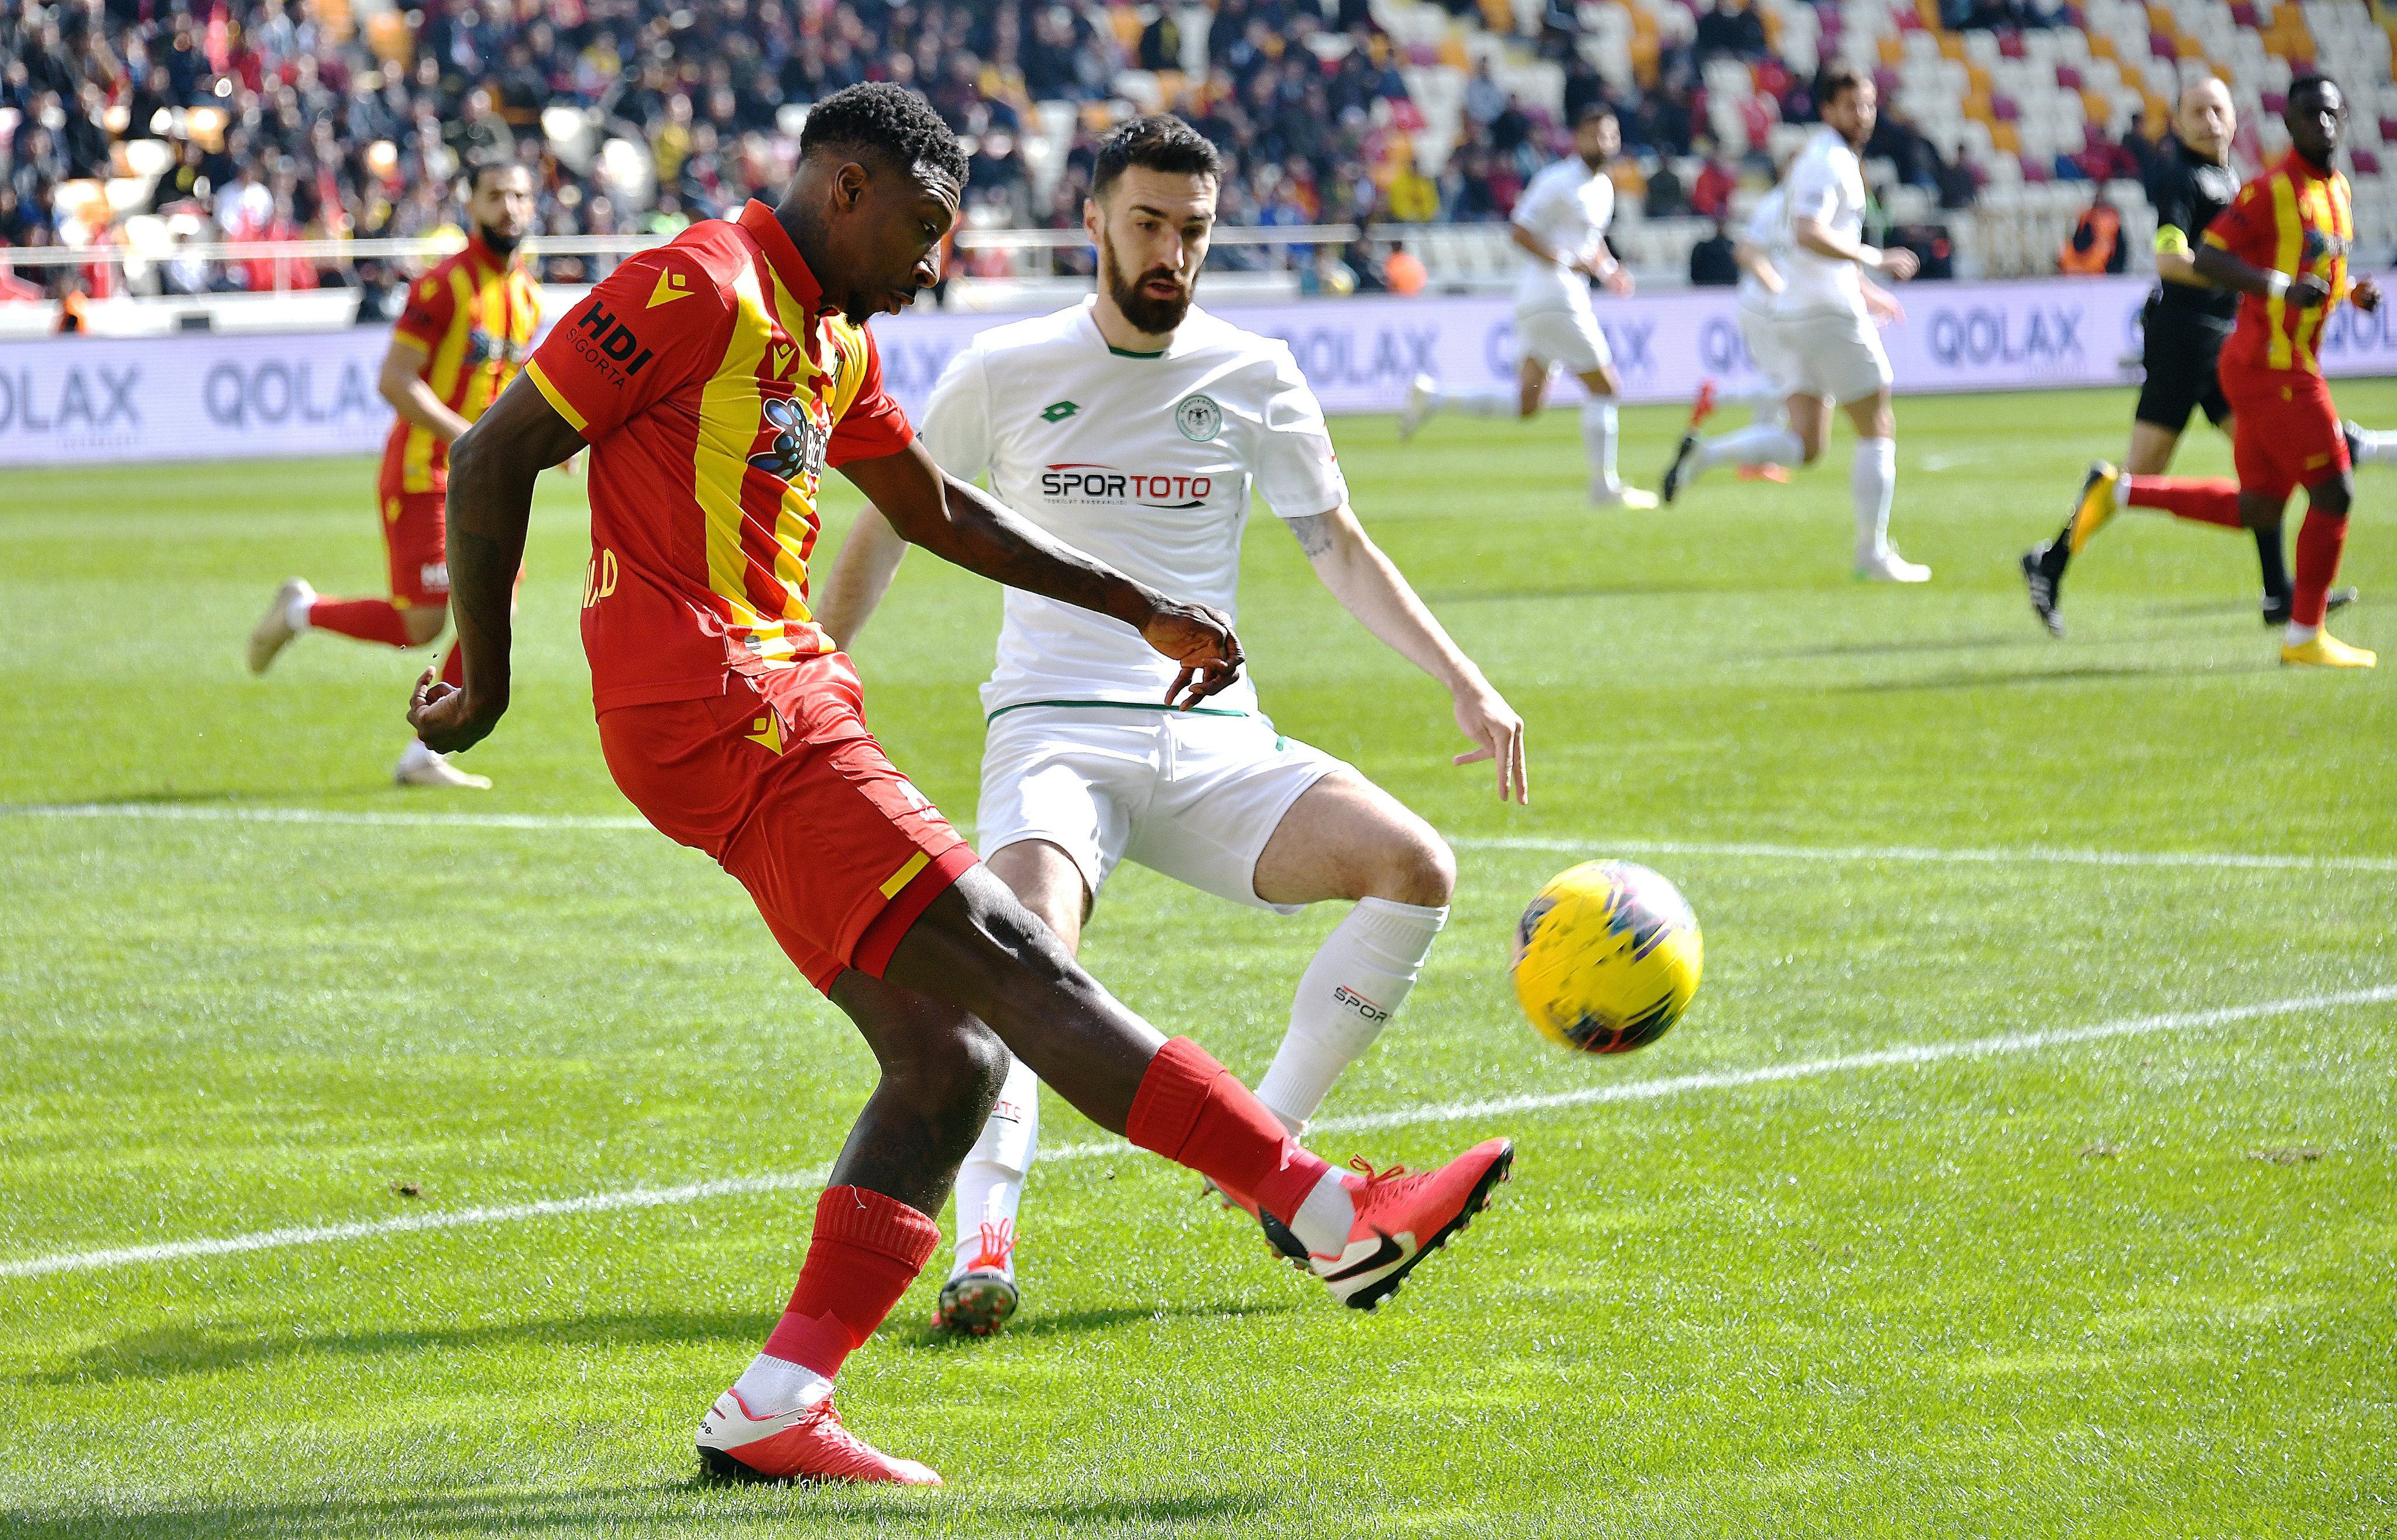 Yeni Malatyaspor-Konyaspor maçından kareler 7